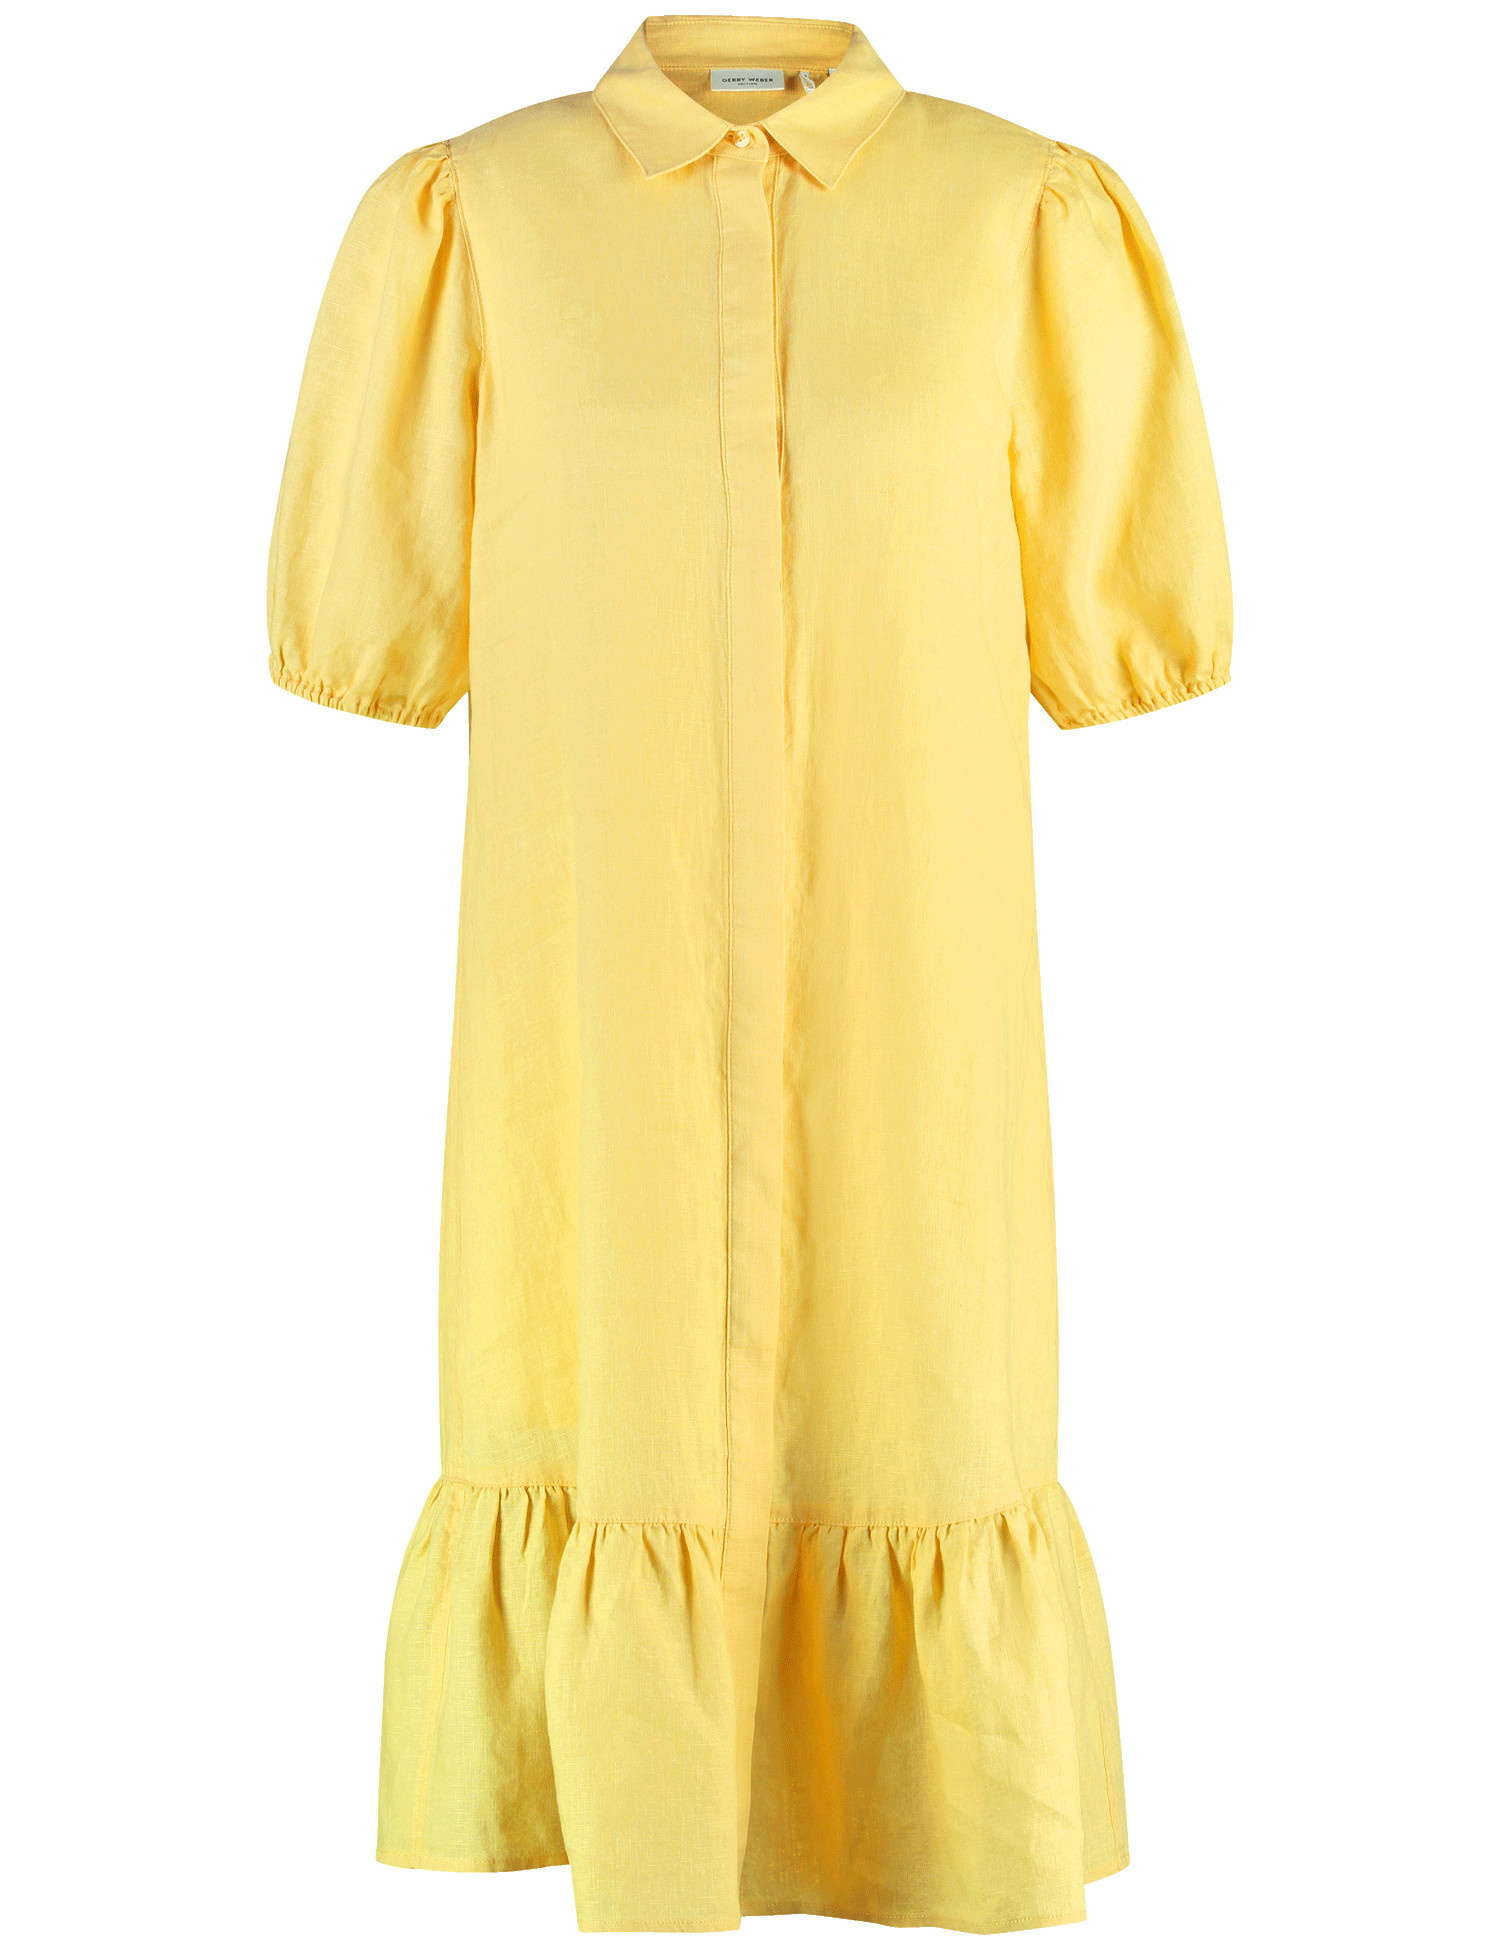 GERRY WEBER Damen Modisches Blusenkleid aus Leinen Halber Arm Hemdkragen Gelb, 34 von Gerry Weber